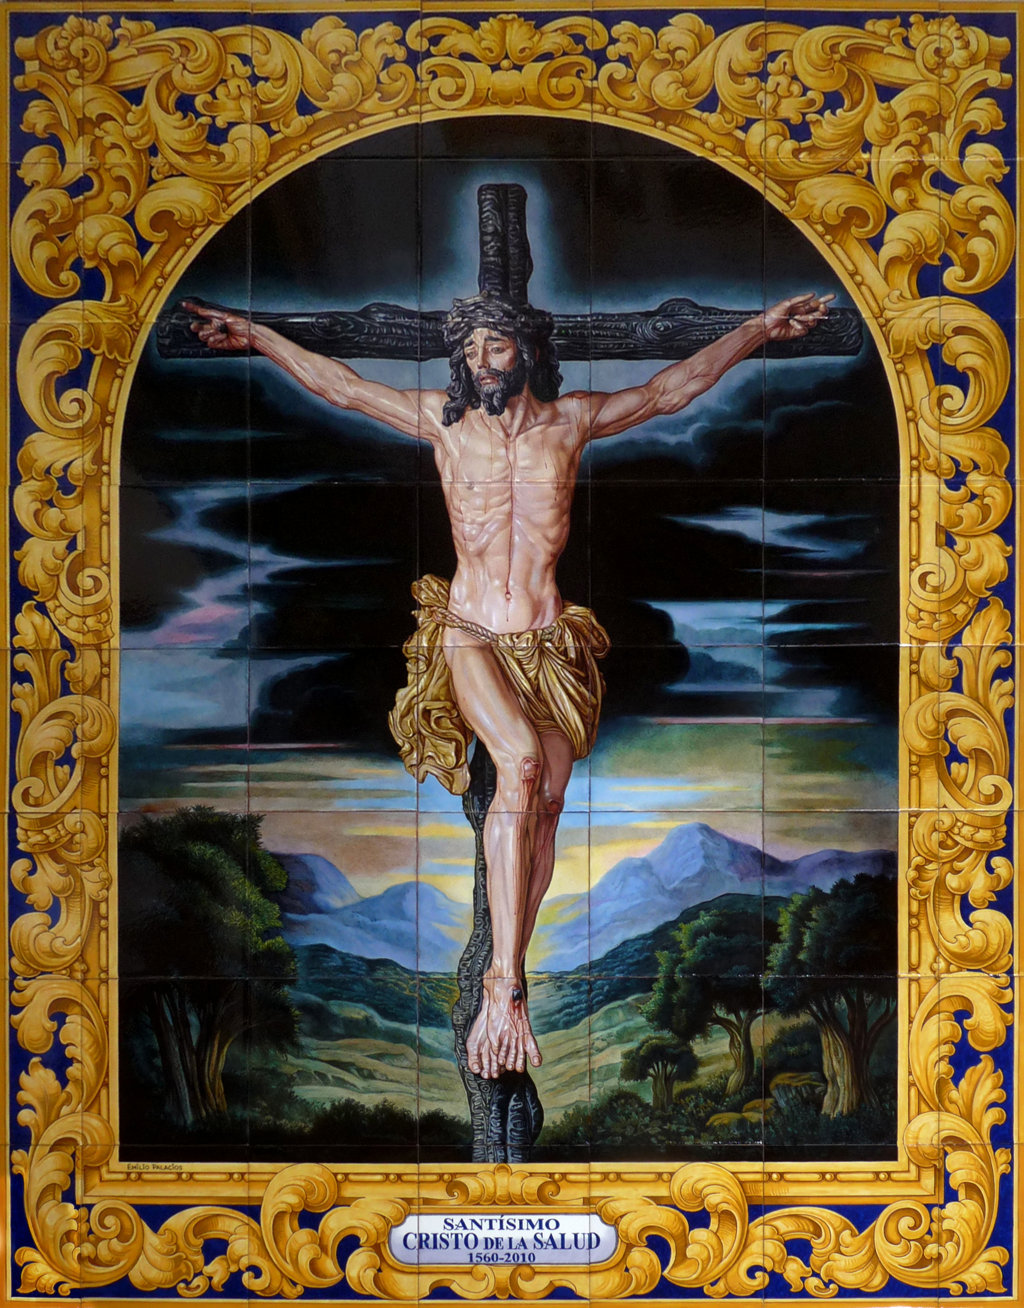 D00298. Sevilla. La Hermandad de Montesión dedica un retablo cerámico al Santísimo Cristo de la Salud en su 450 aniversario fundacional